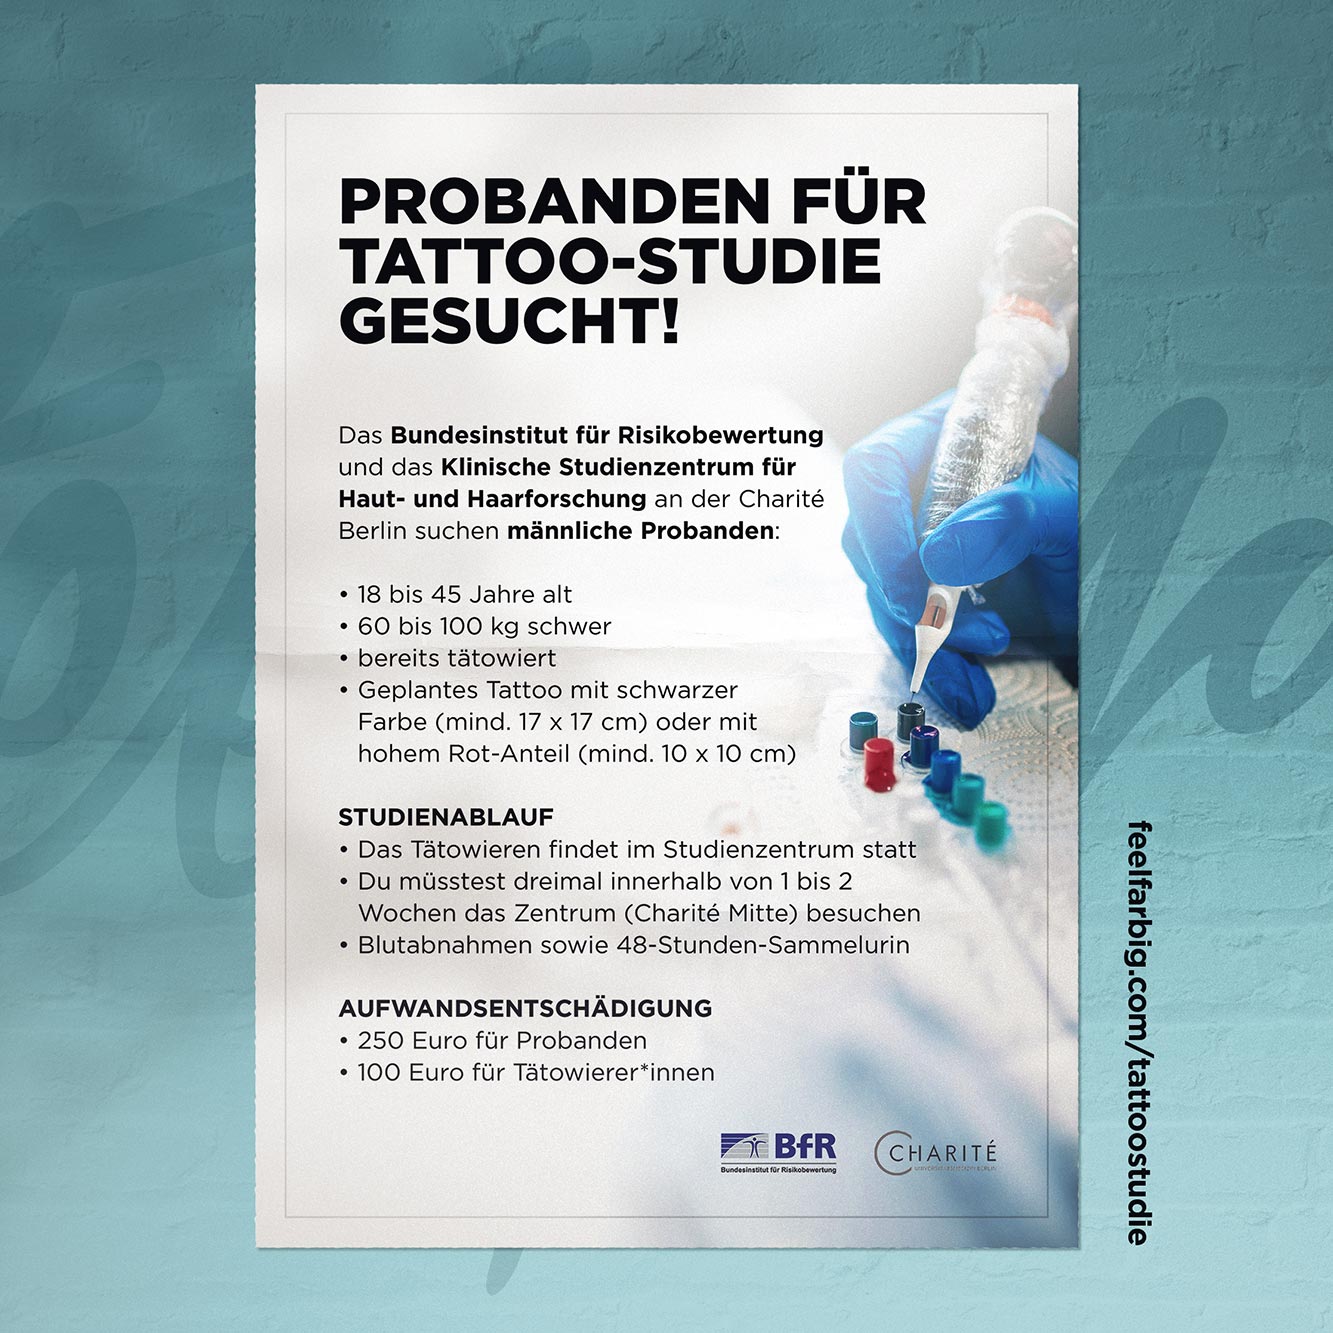 Auf einen Blick: Anforderungen und Ablauf der Tattoo-Studie